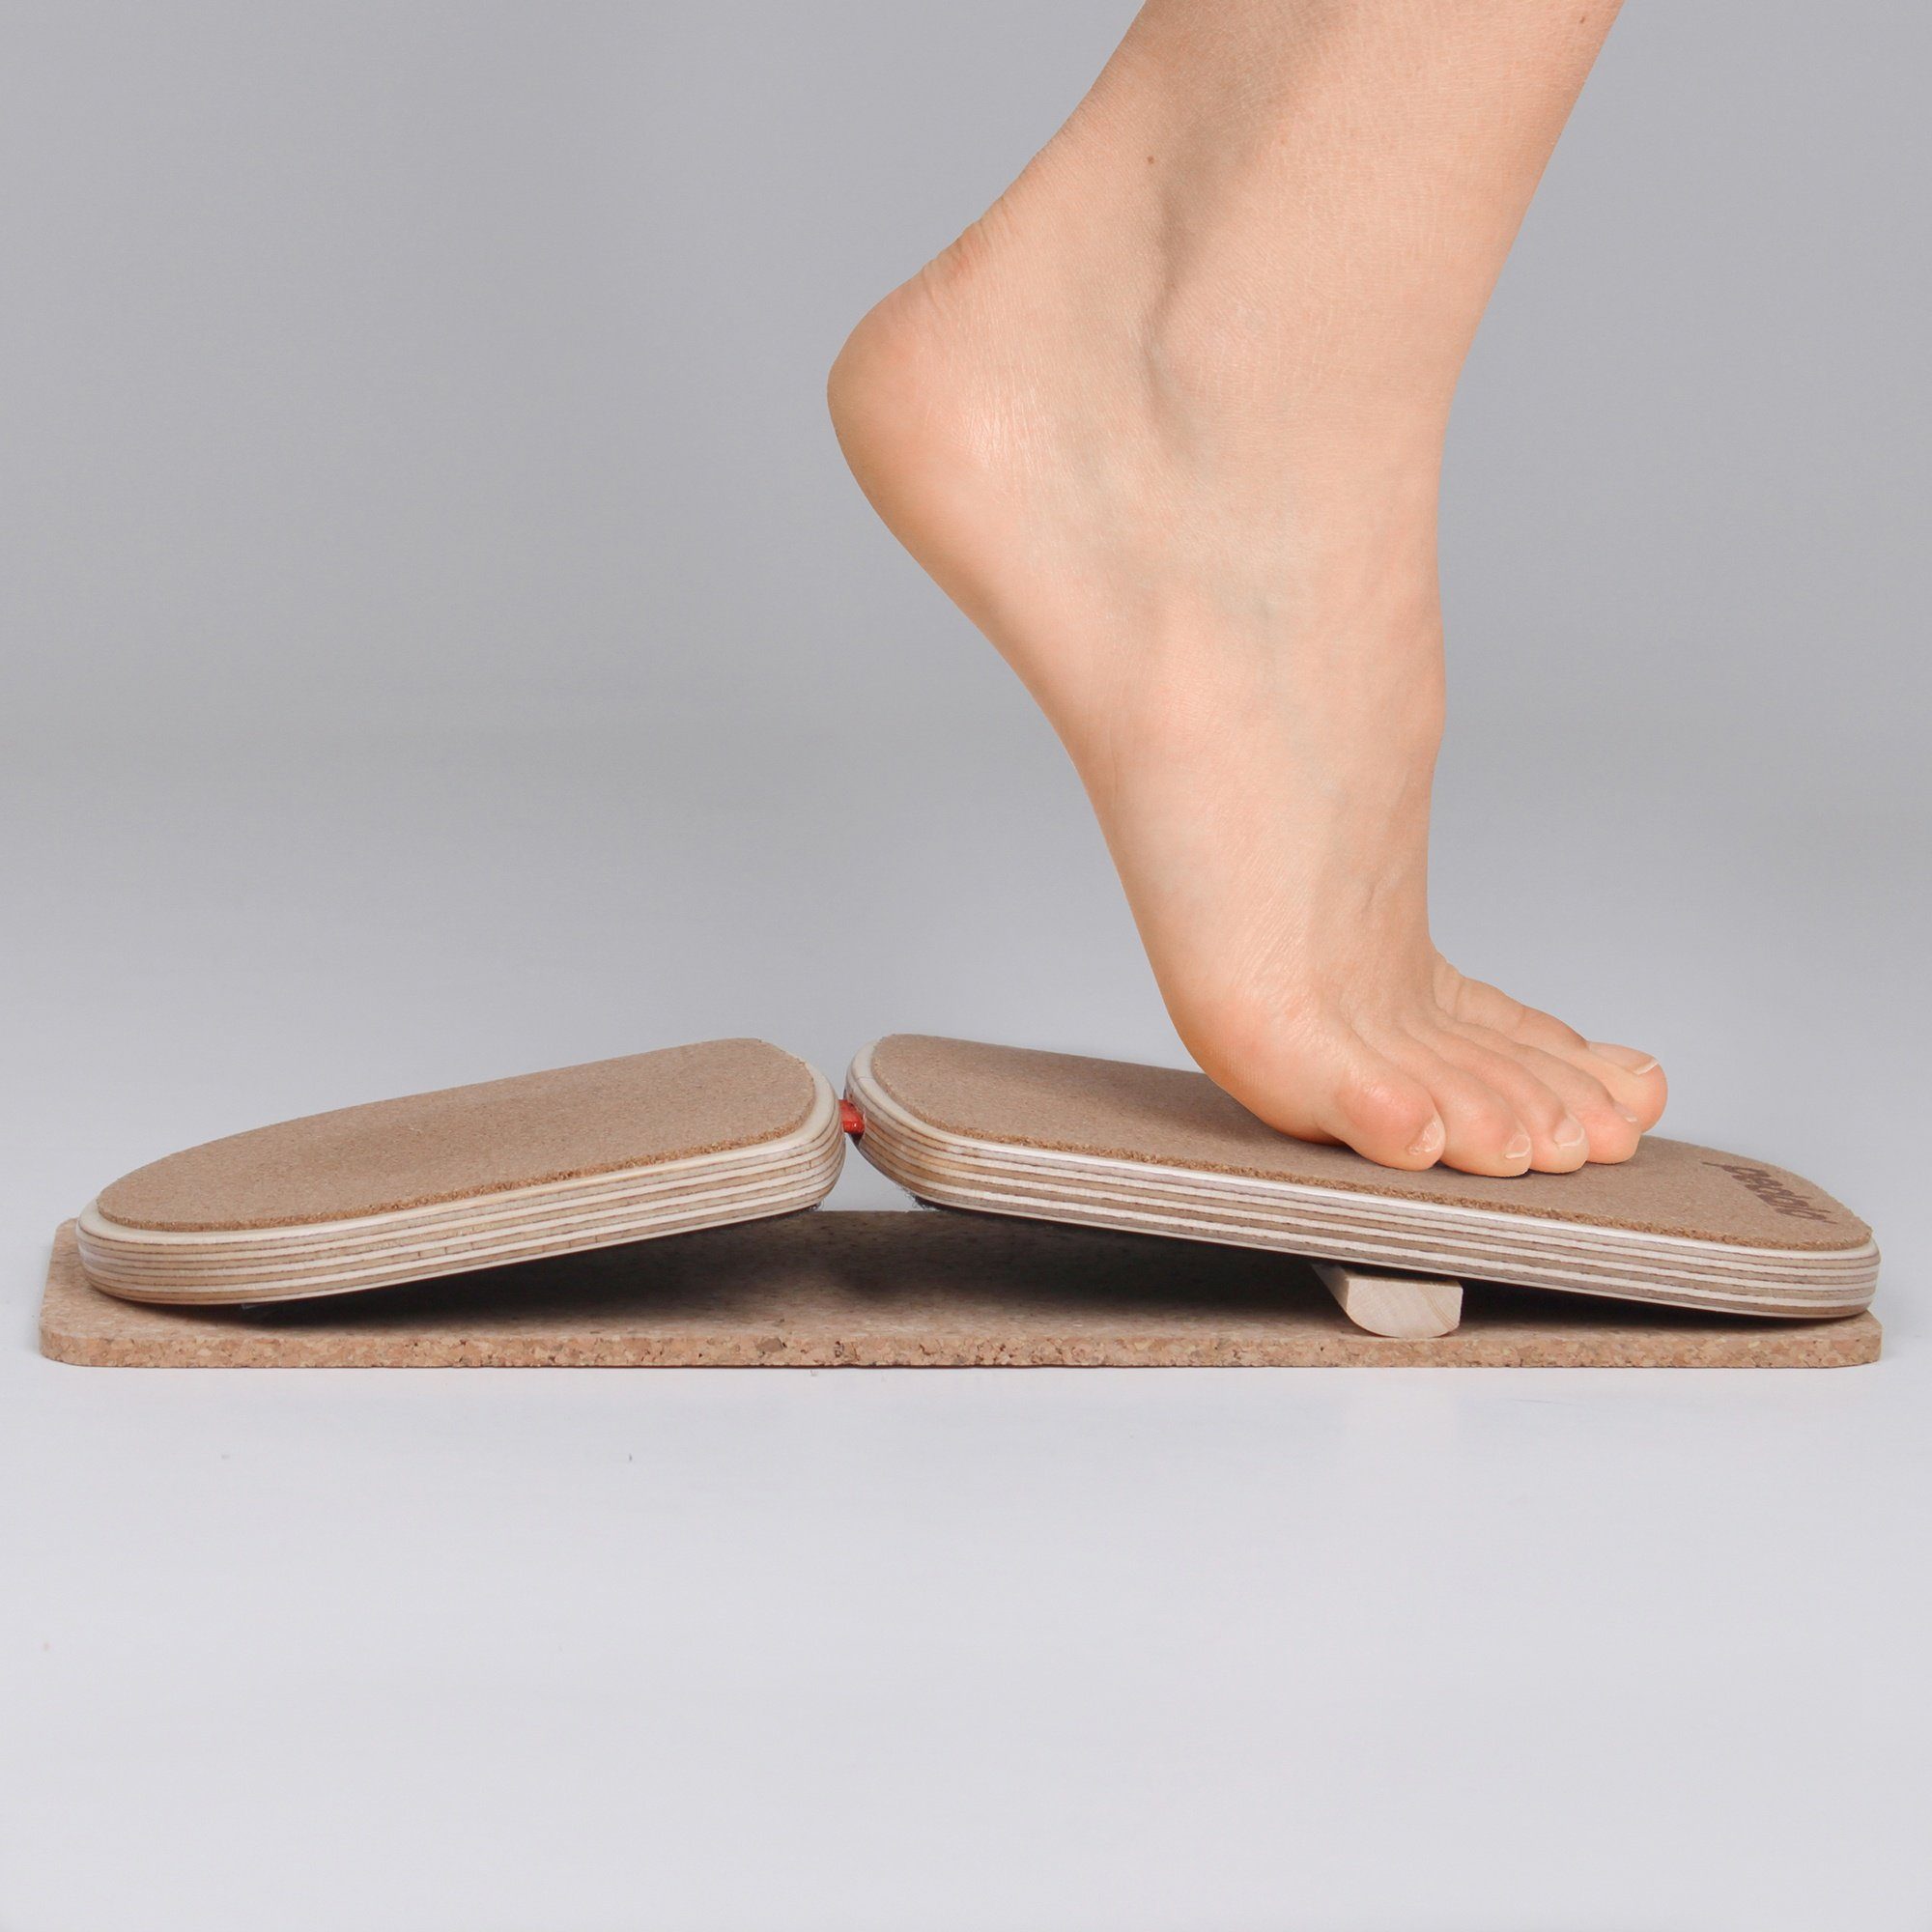 pedalo® bei Fußtrainer Fußproblemen den Spiraldynamik, vielseitig Fußtrainer Trainiert Fuß